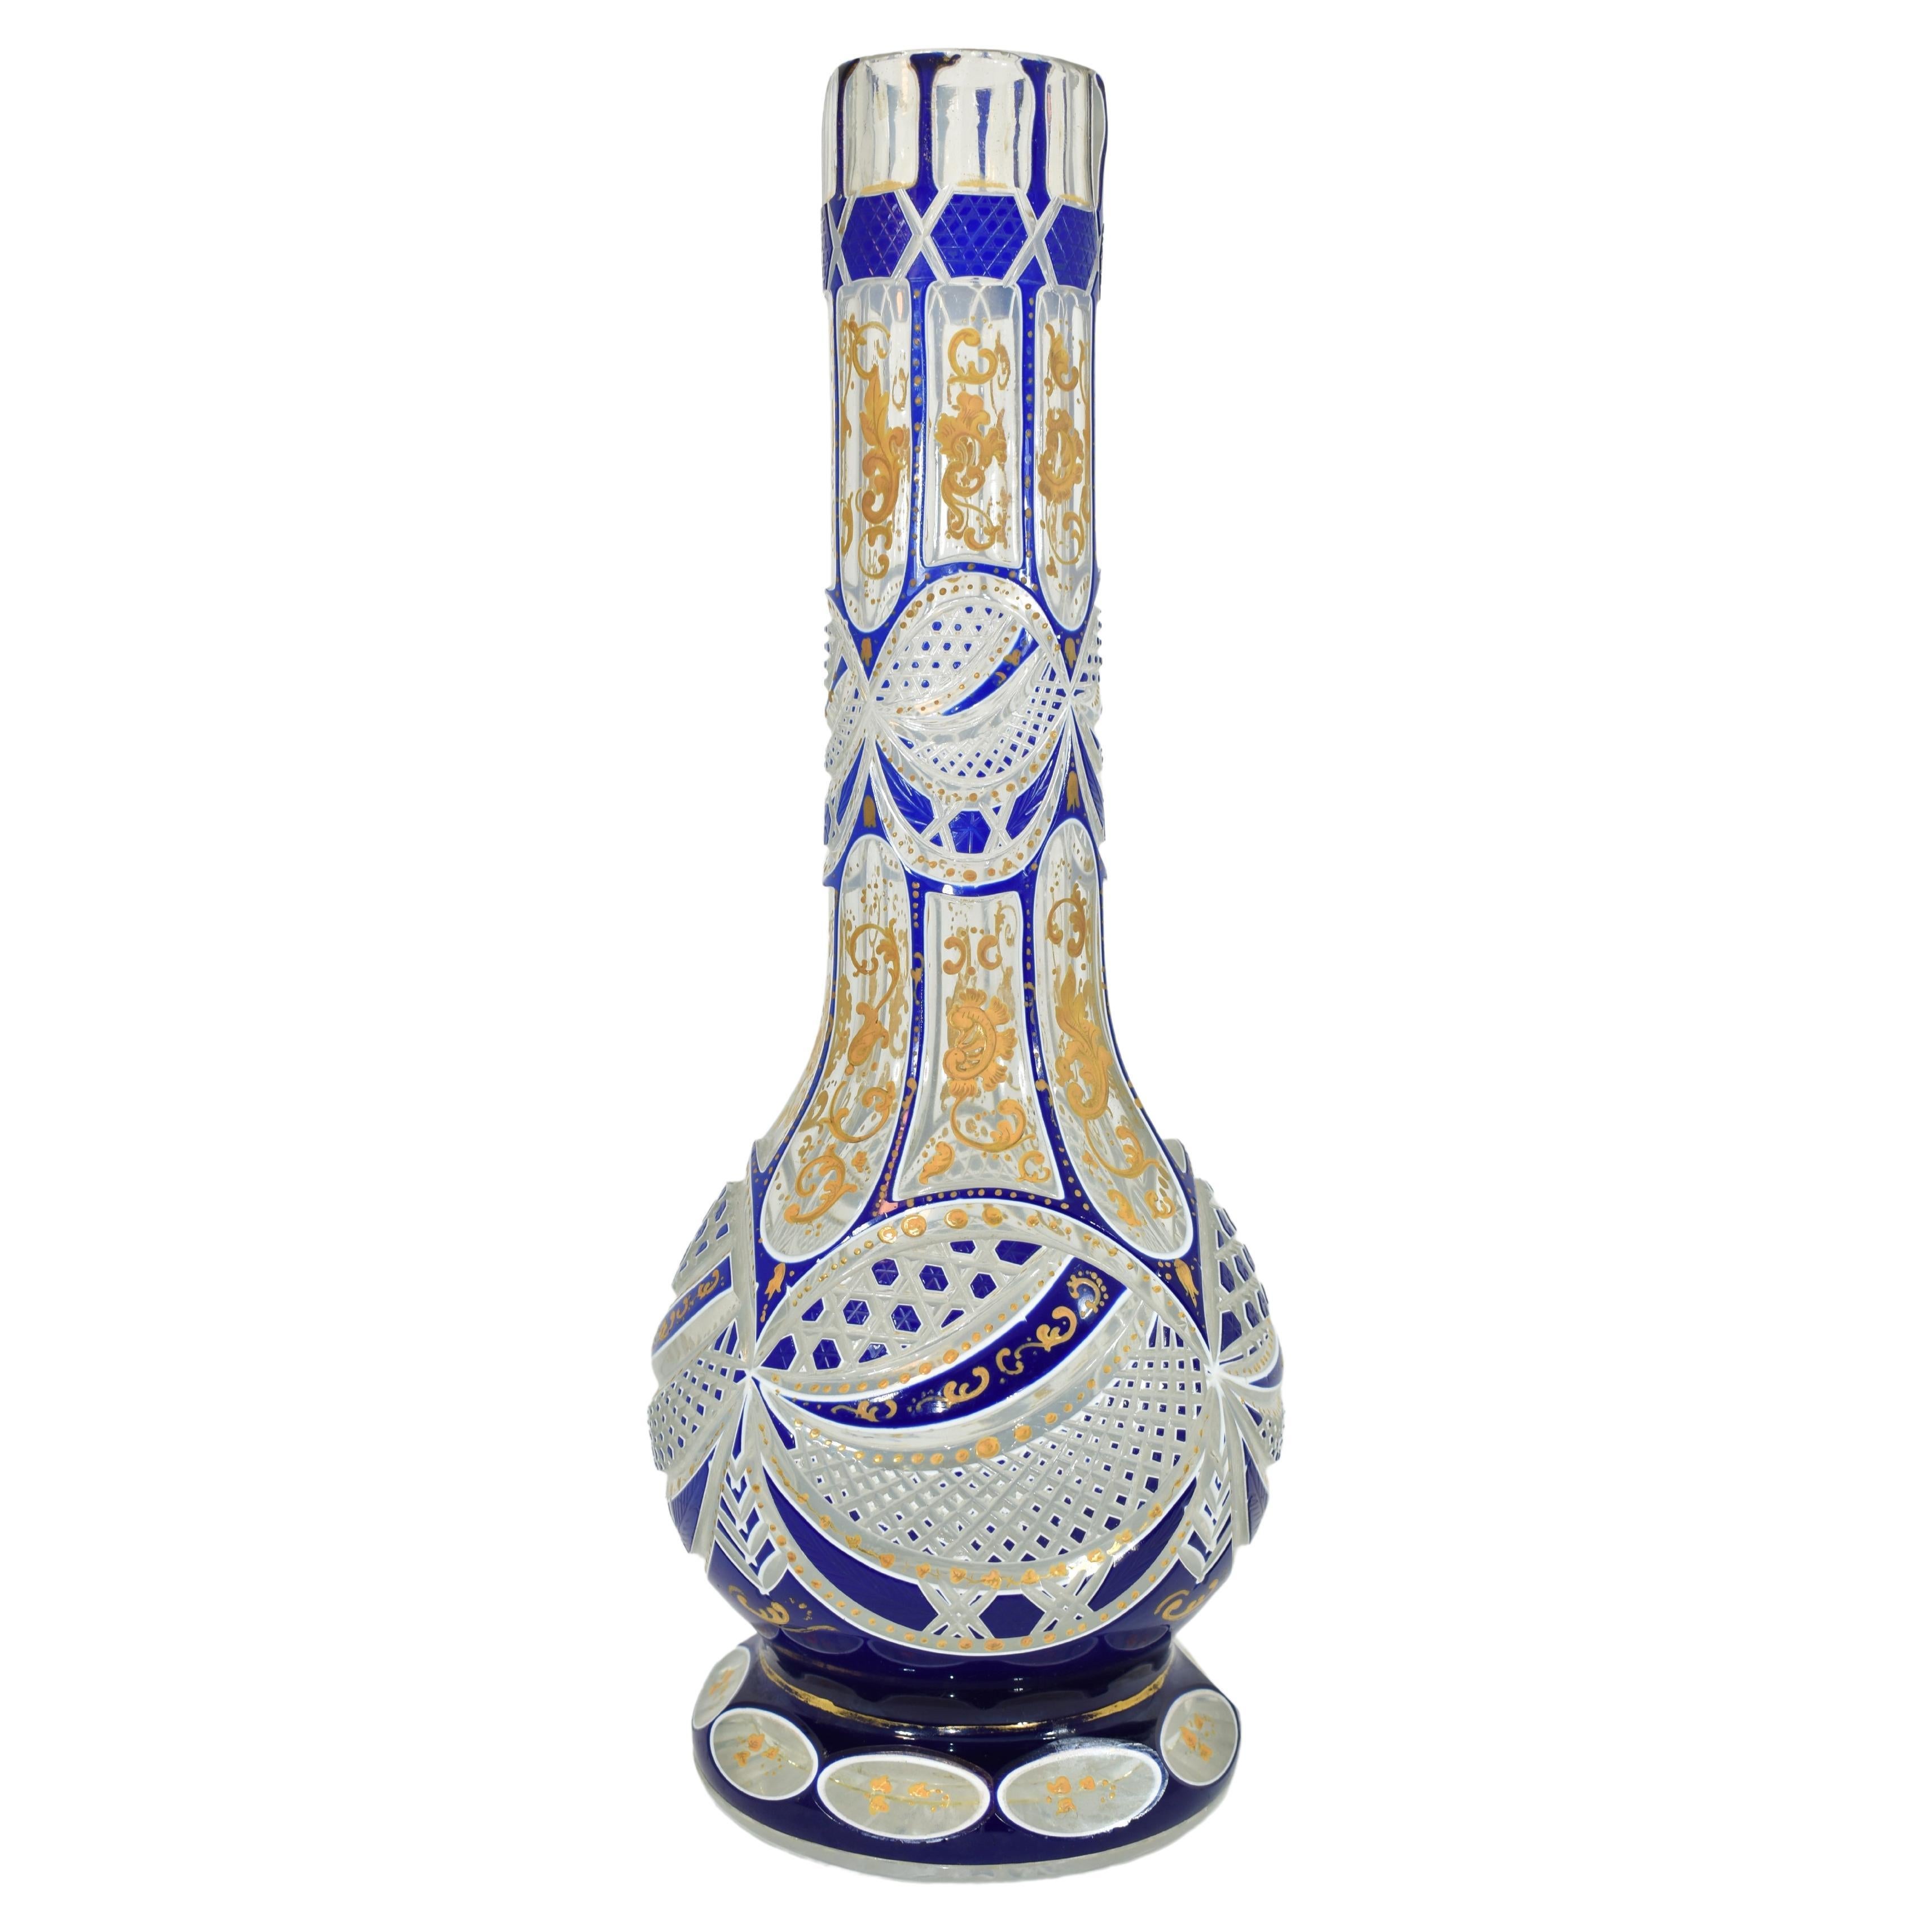 Grande base de narguilé antique en verre à double recouvrement (huqqa)
Bohemia, 19ème siècle
Verre richement découpé en formes variées et décoré tout autour d'émail doré.
Fabriqués pour le marché islamique (ottoman ou persan)

Hauteur (32